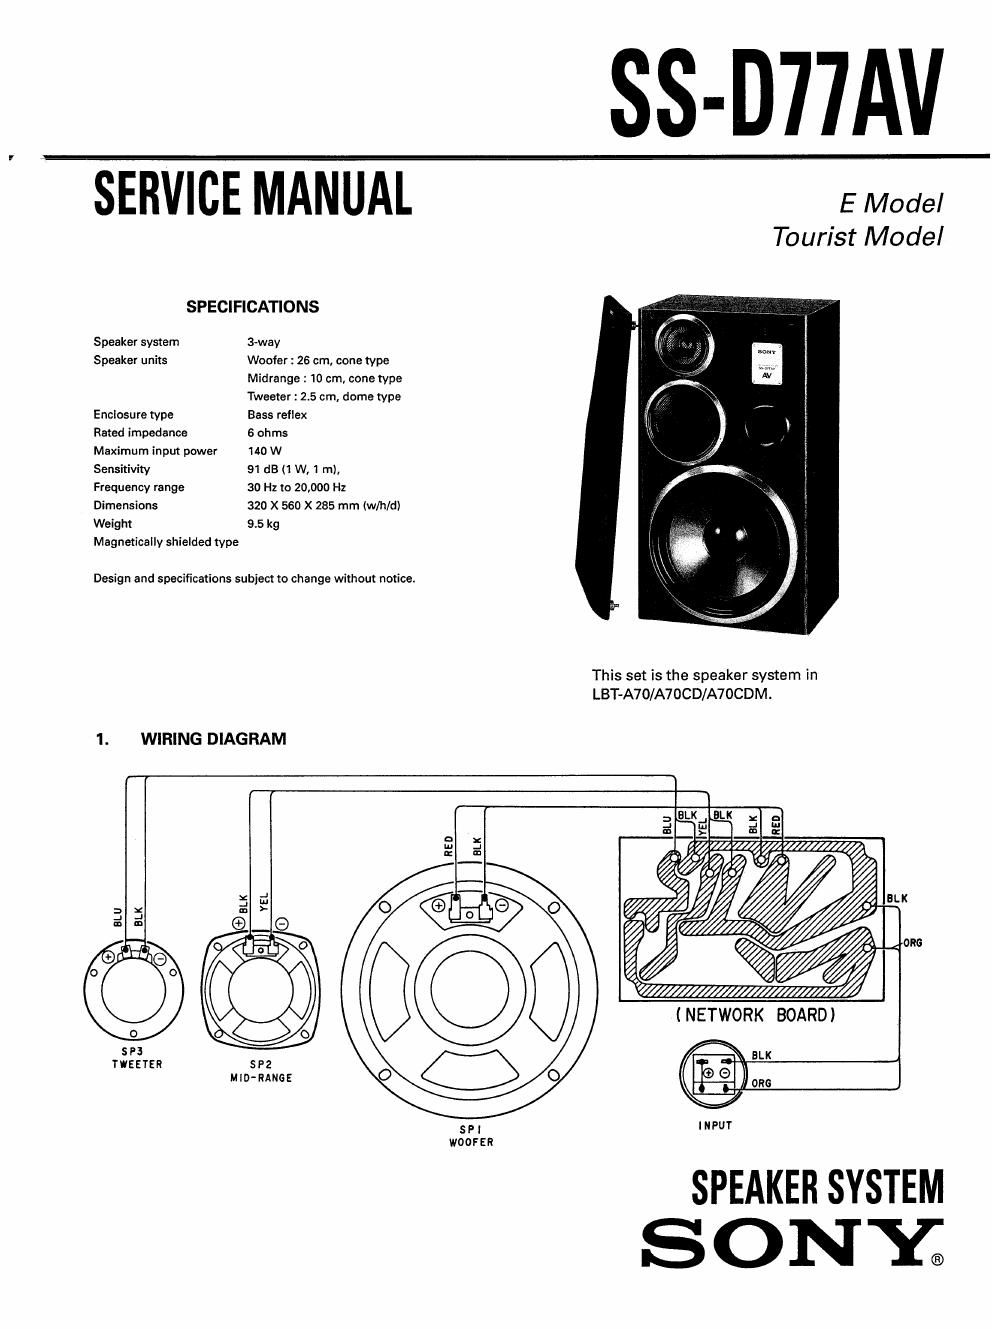 sony ss d 77 av service manual